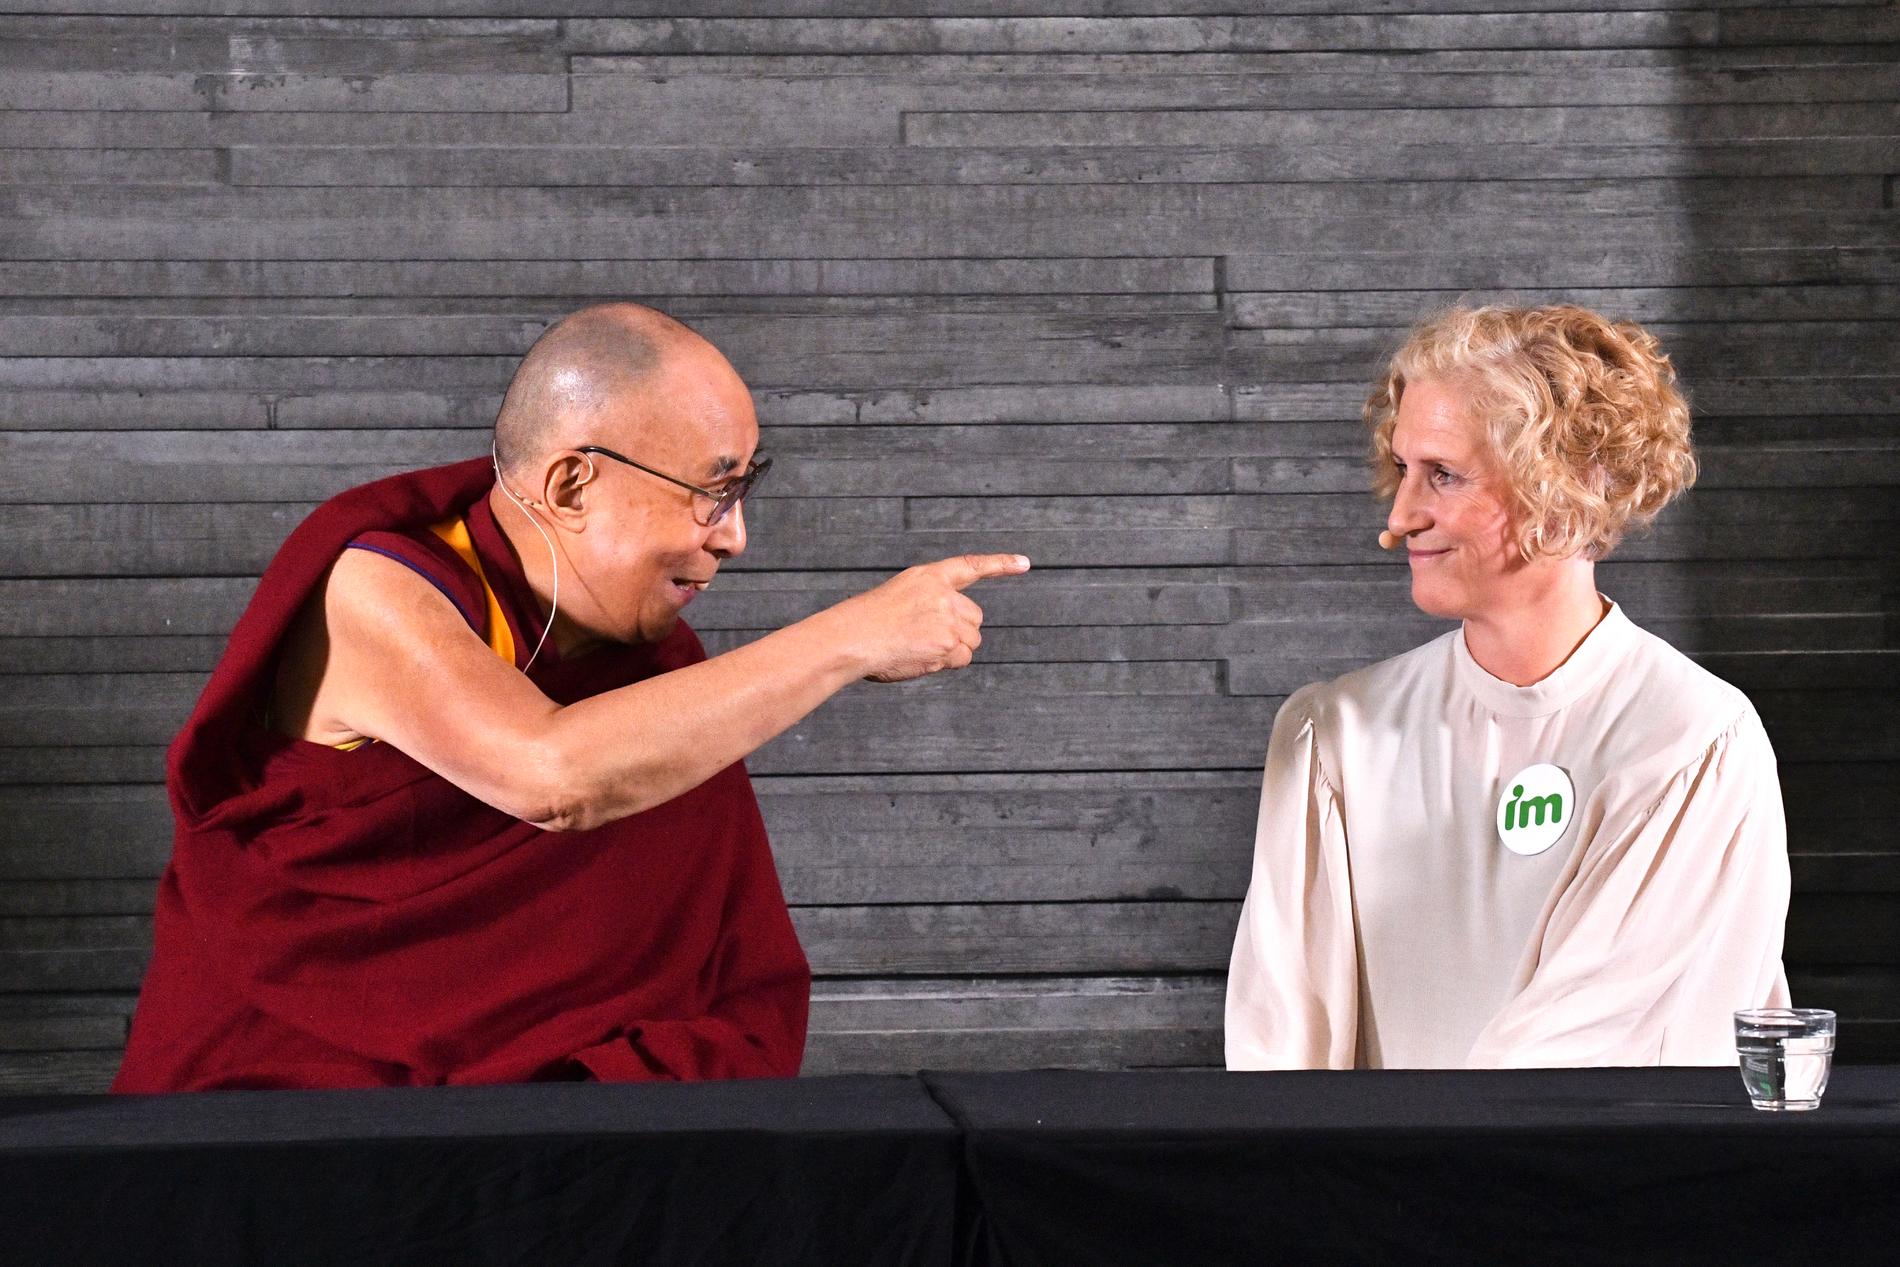 Dalai lama på gott humör när han tillsammans med IM:s generalsekreterare Ann Svénsen möter pressen inför sitt anförande i Malmö.